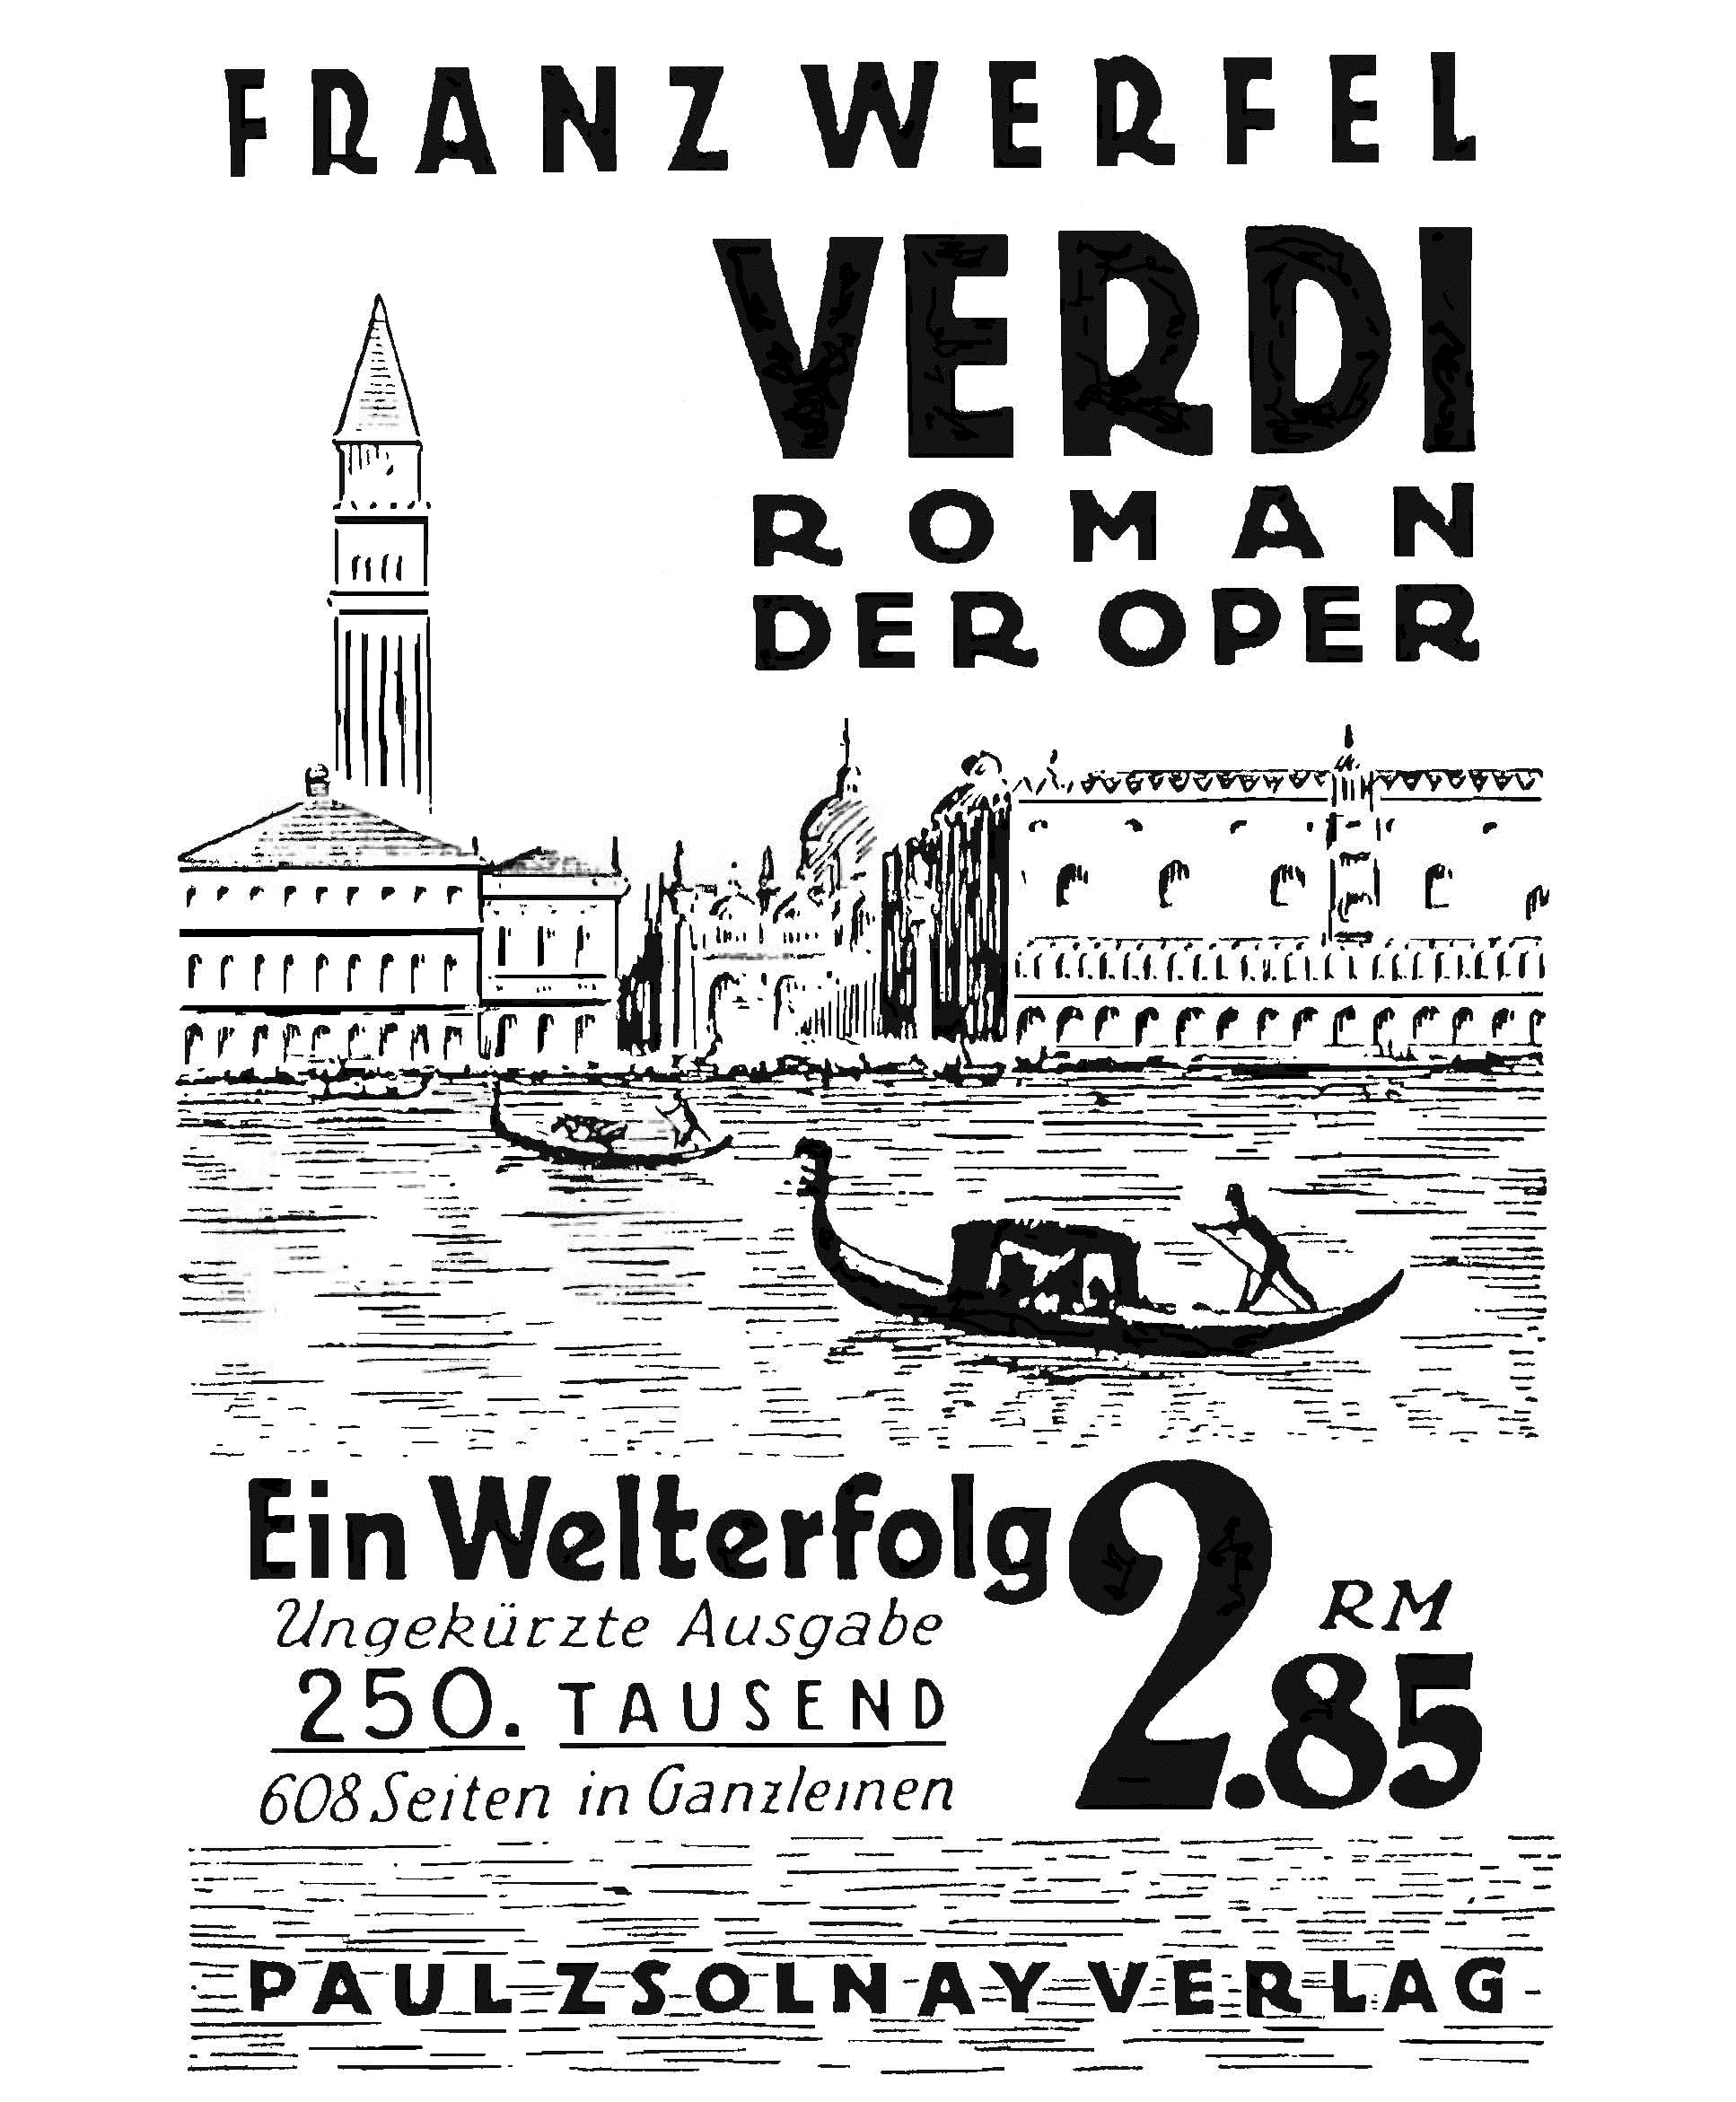 Anzeige Sonderausgabe Franz Werfels Verdi.